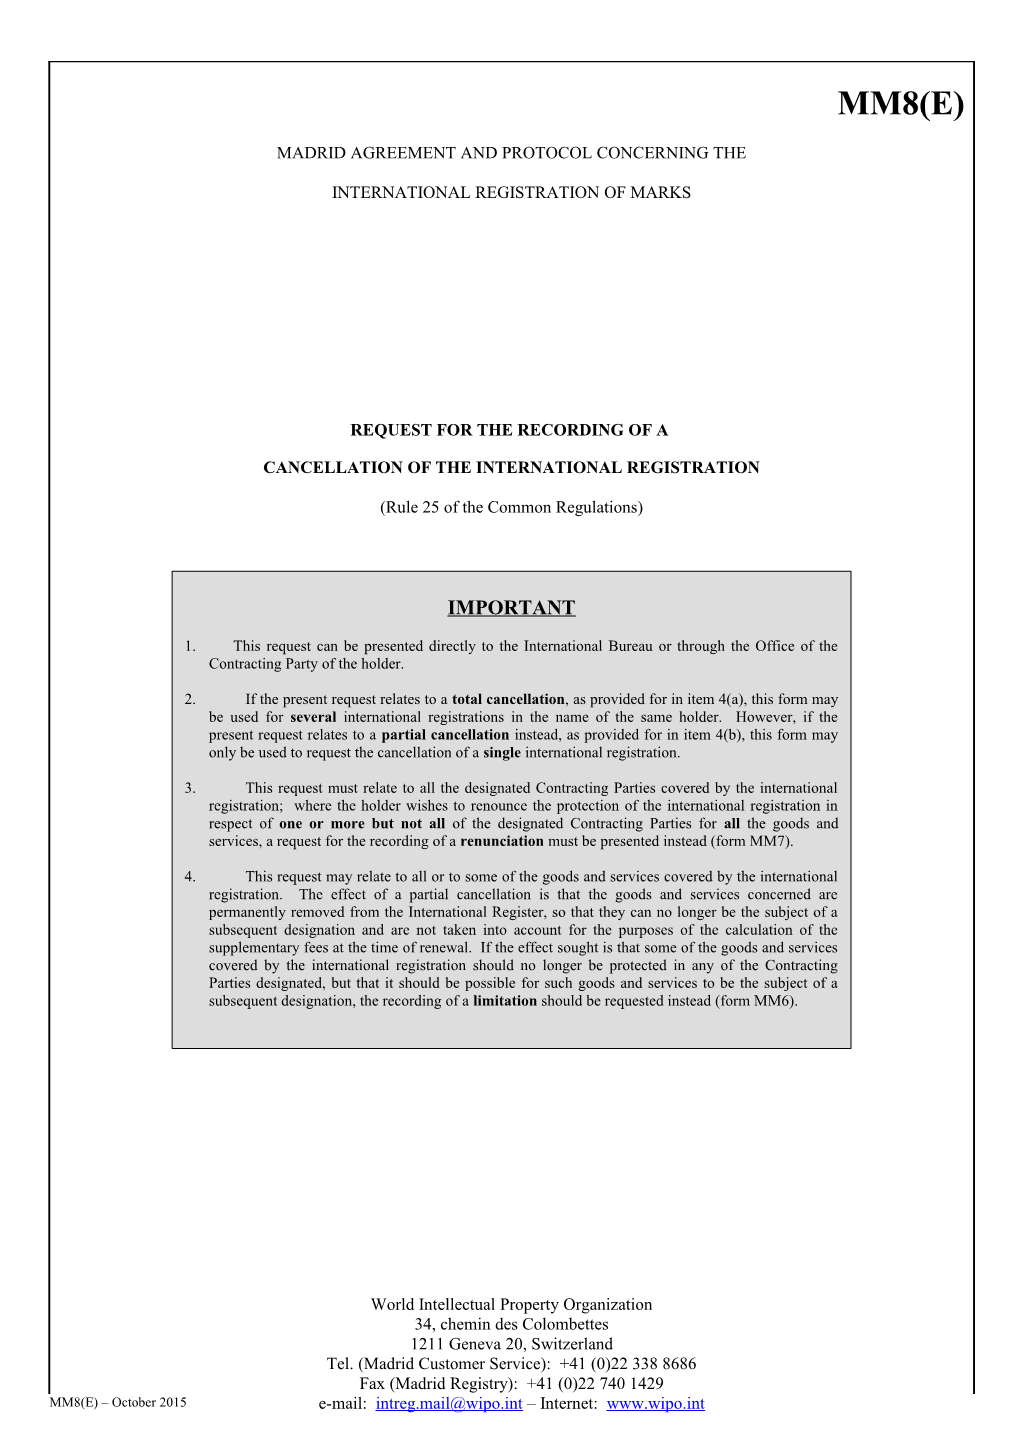 Form MM8 (Madrid Agreement Concerning the International Registration of Marks